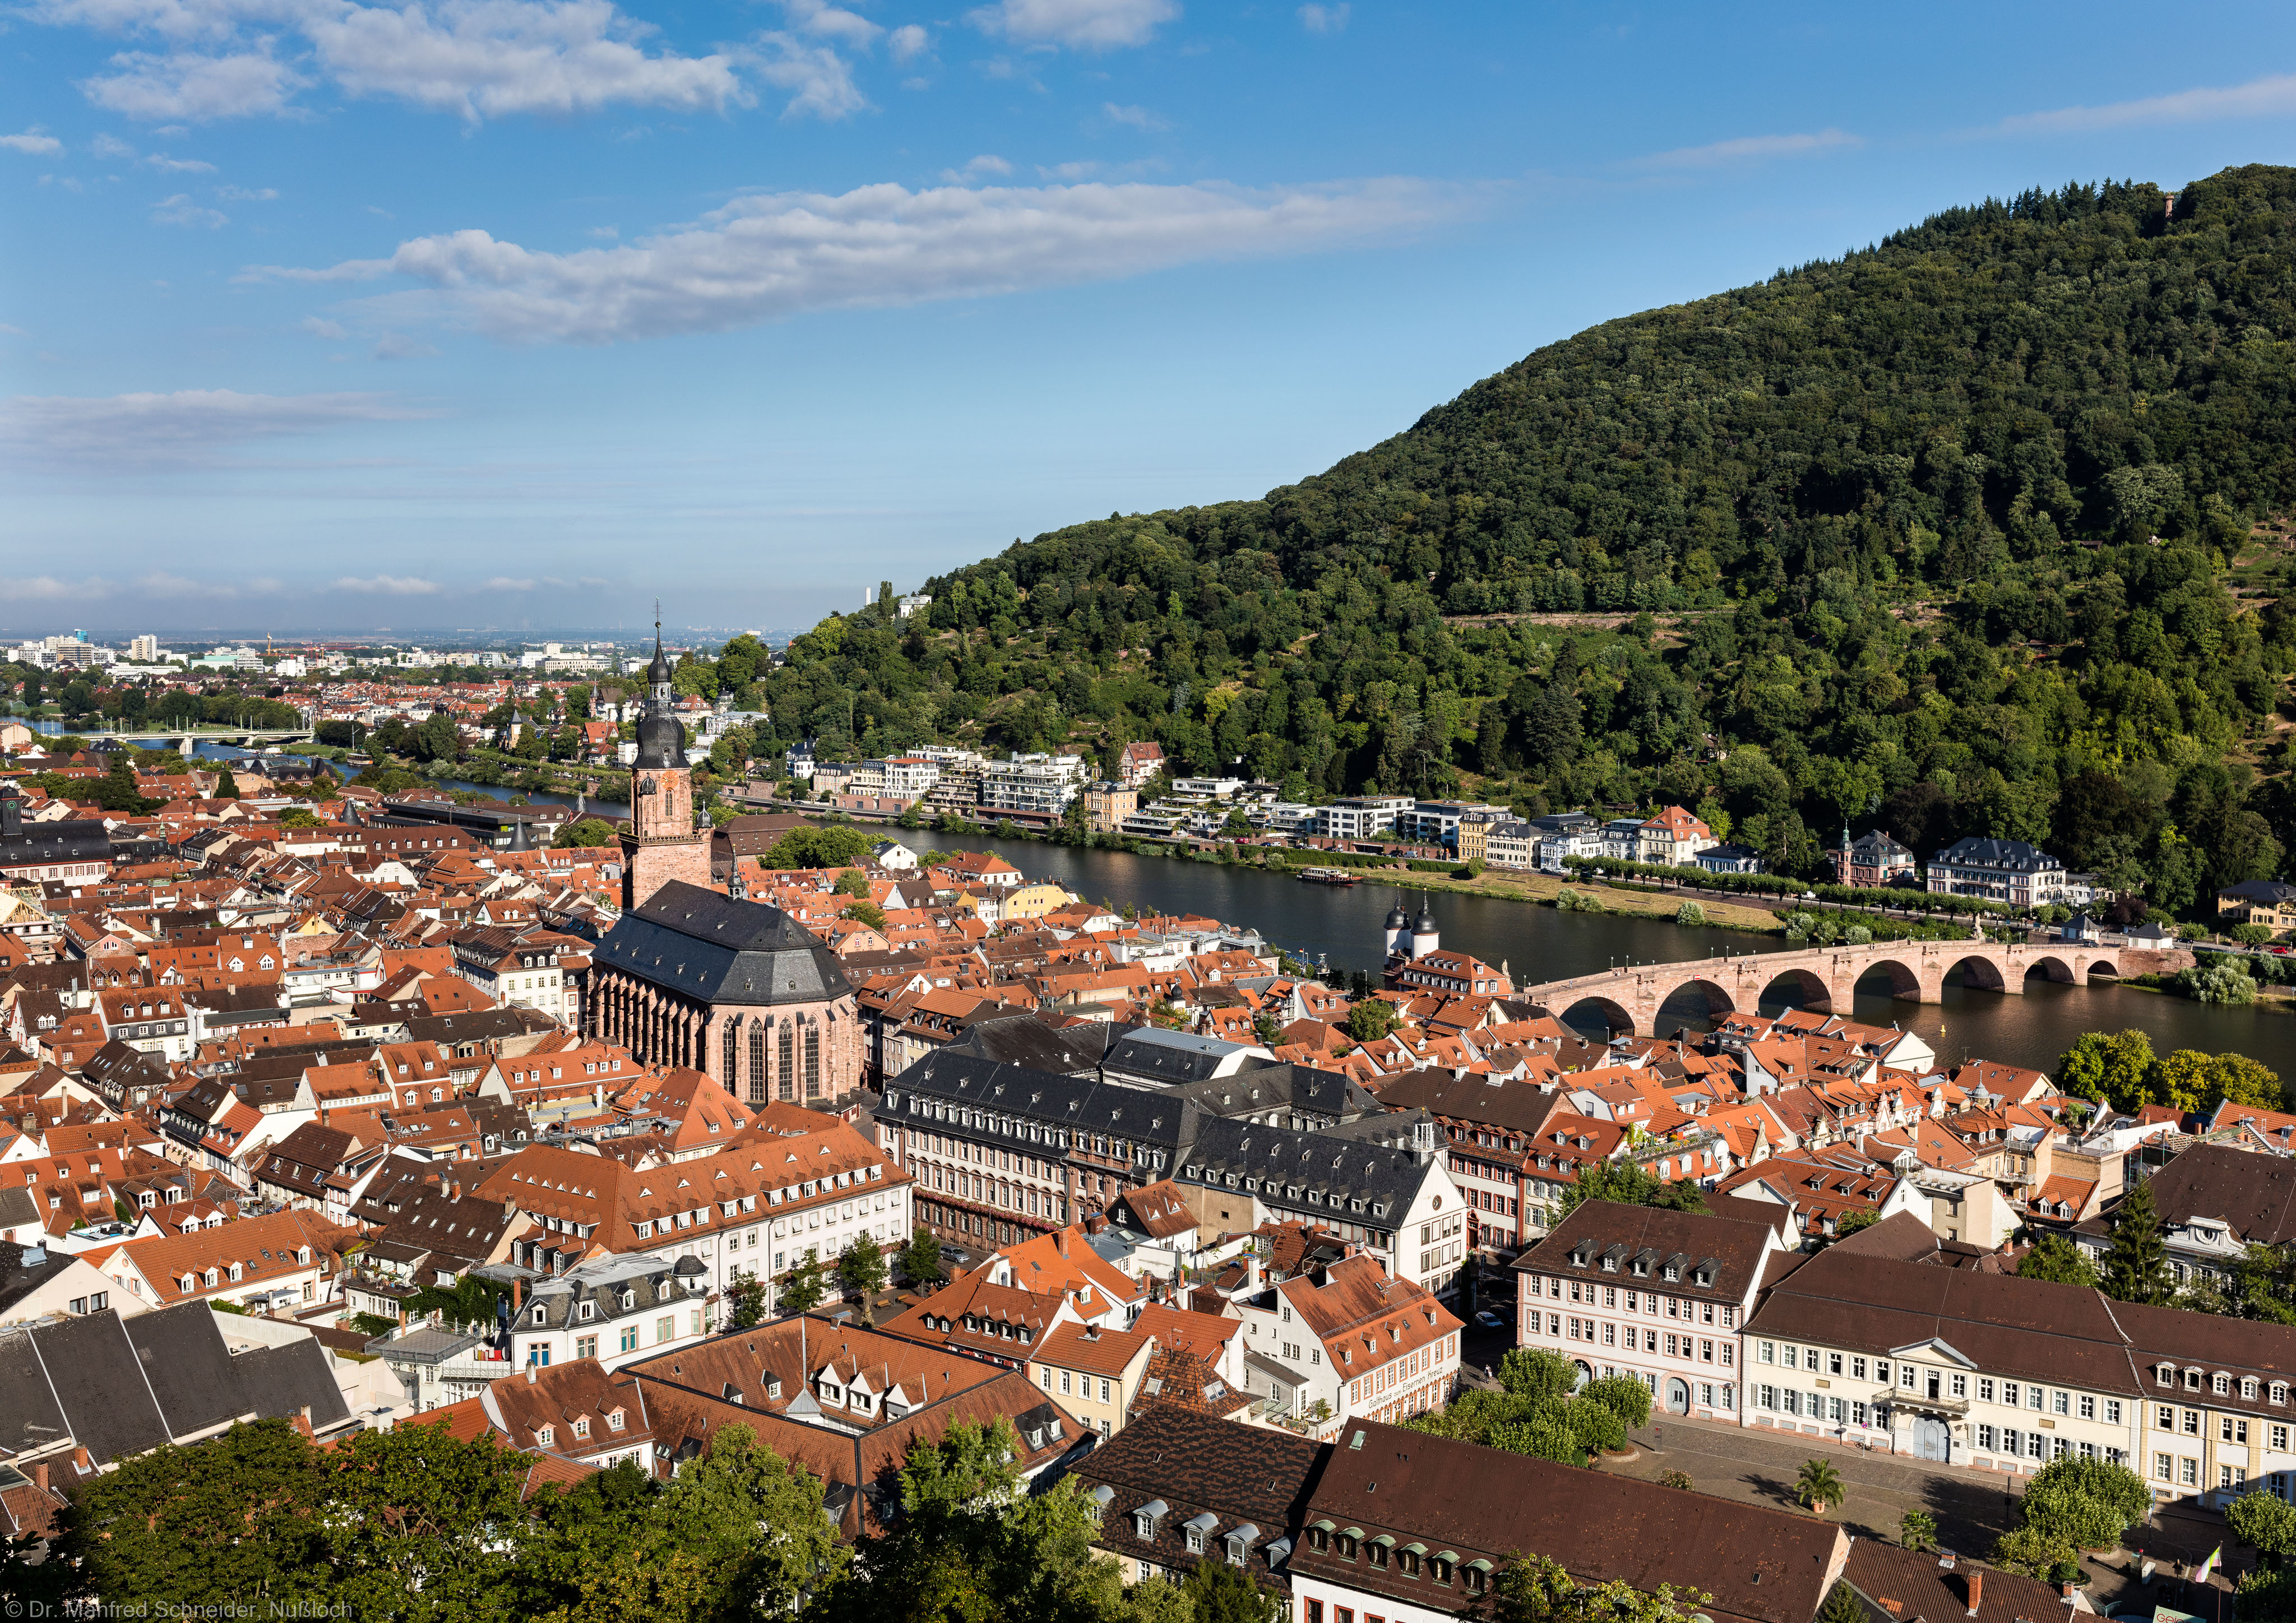 Heidelberg - Heiliggeistkirche - Südostseite - Blick vom Schloss auf Heidelberg und die Südostseite der Heiliggeistkirche (aufgenommen im August 2015, am Vormittag)